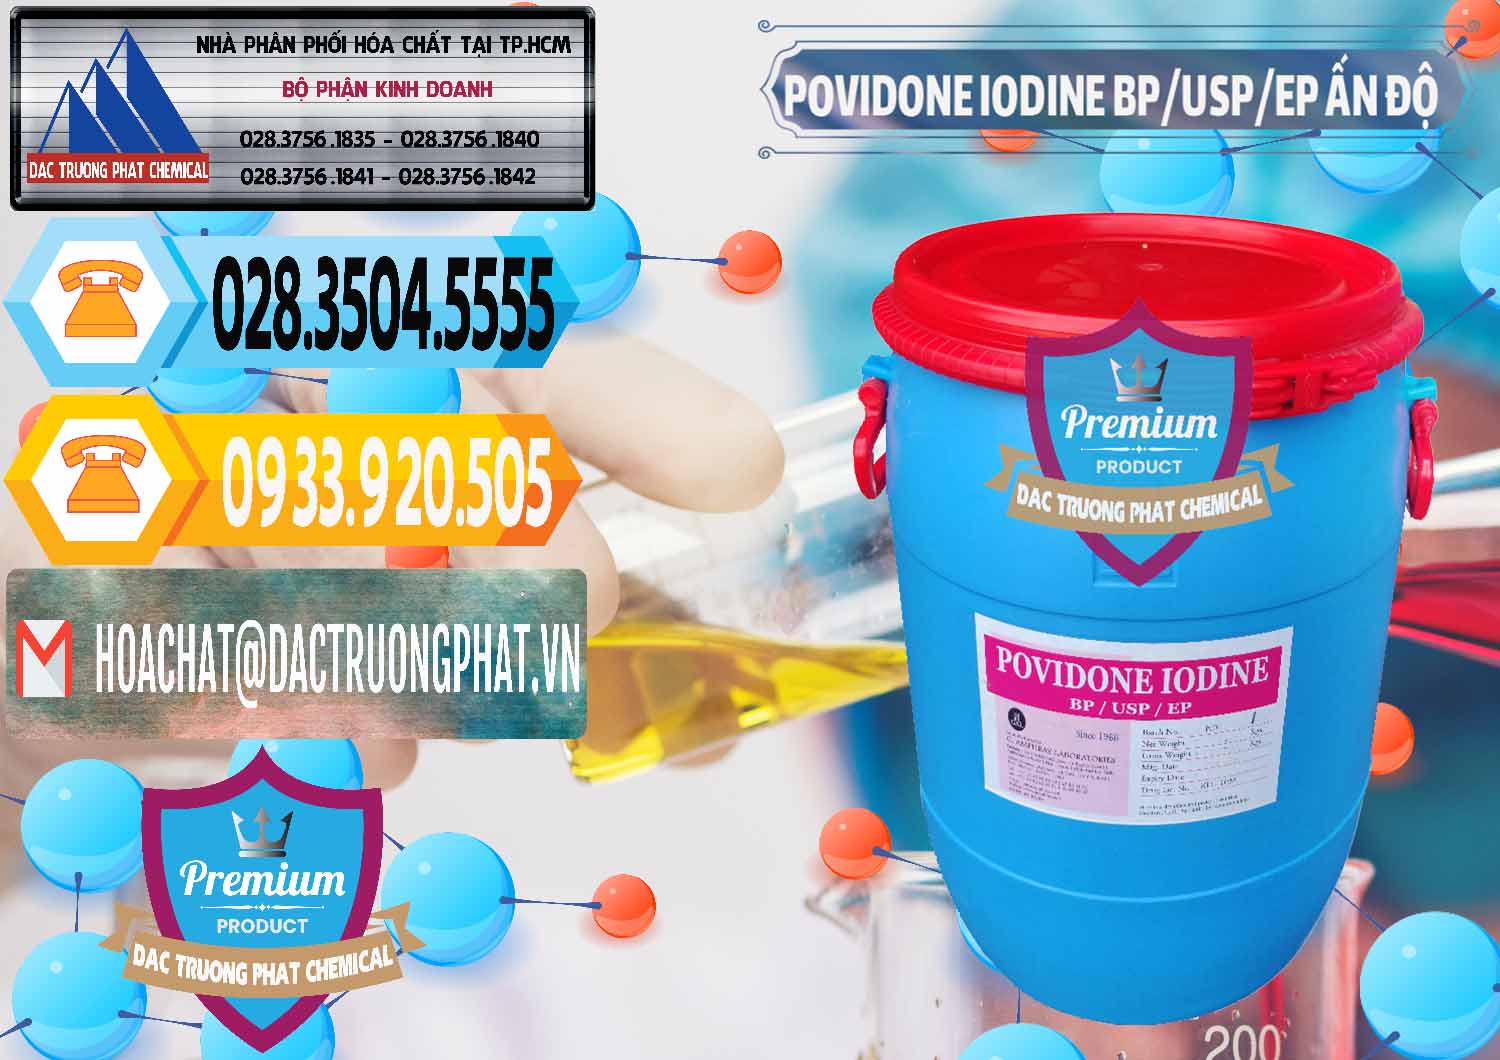 Công ty chuyên bán & cung cấp Povidone Iodine BP USP EP Ấn Độ India - 0318 - Chuyên nhập khẩu _ phân phối hóa chất tại TP.HCM - hoachattayrua.net